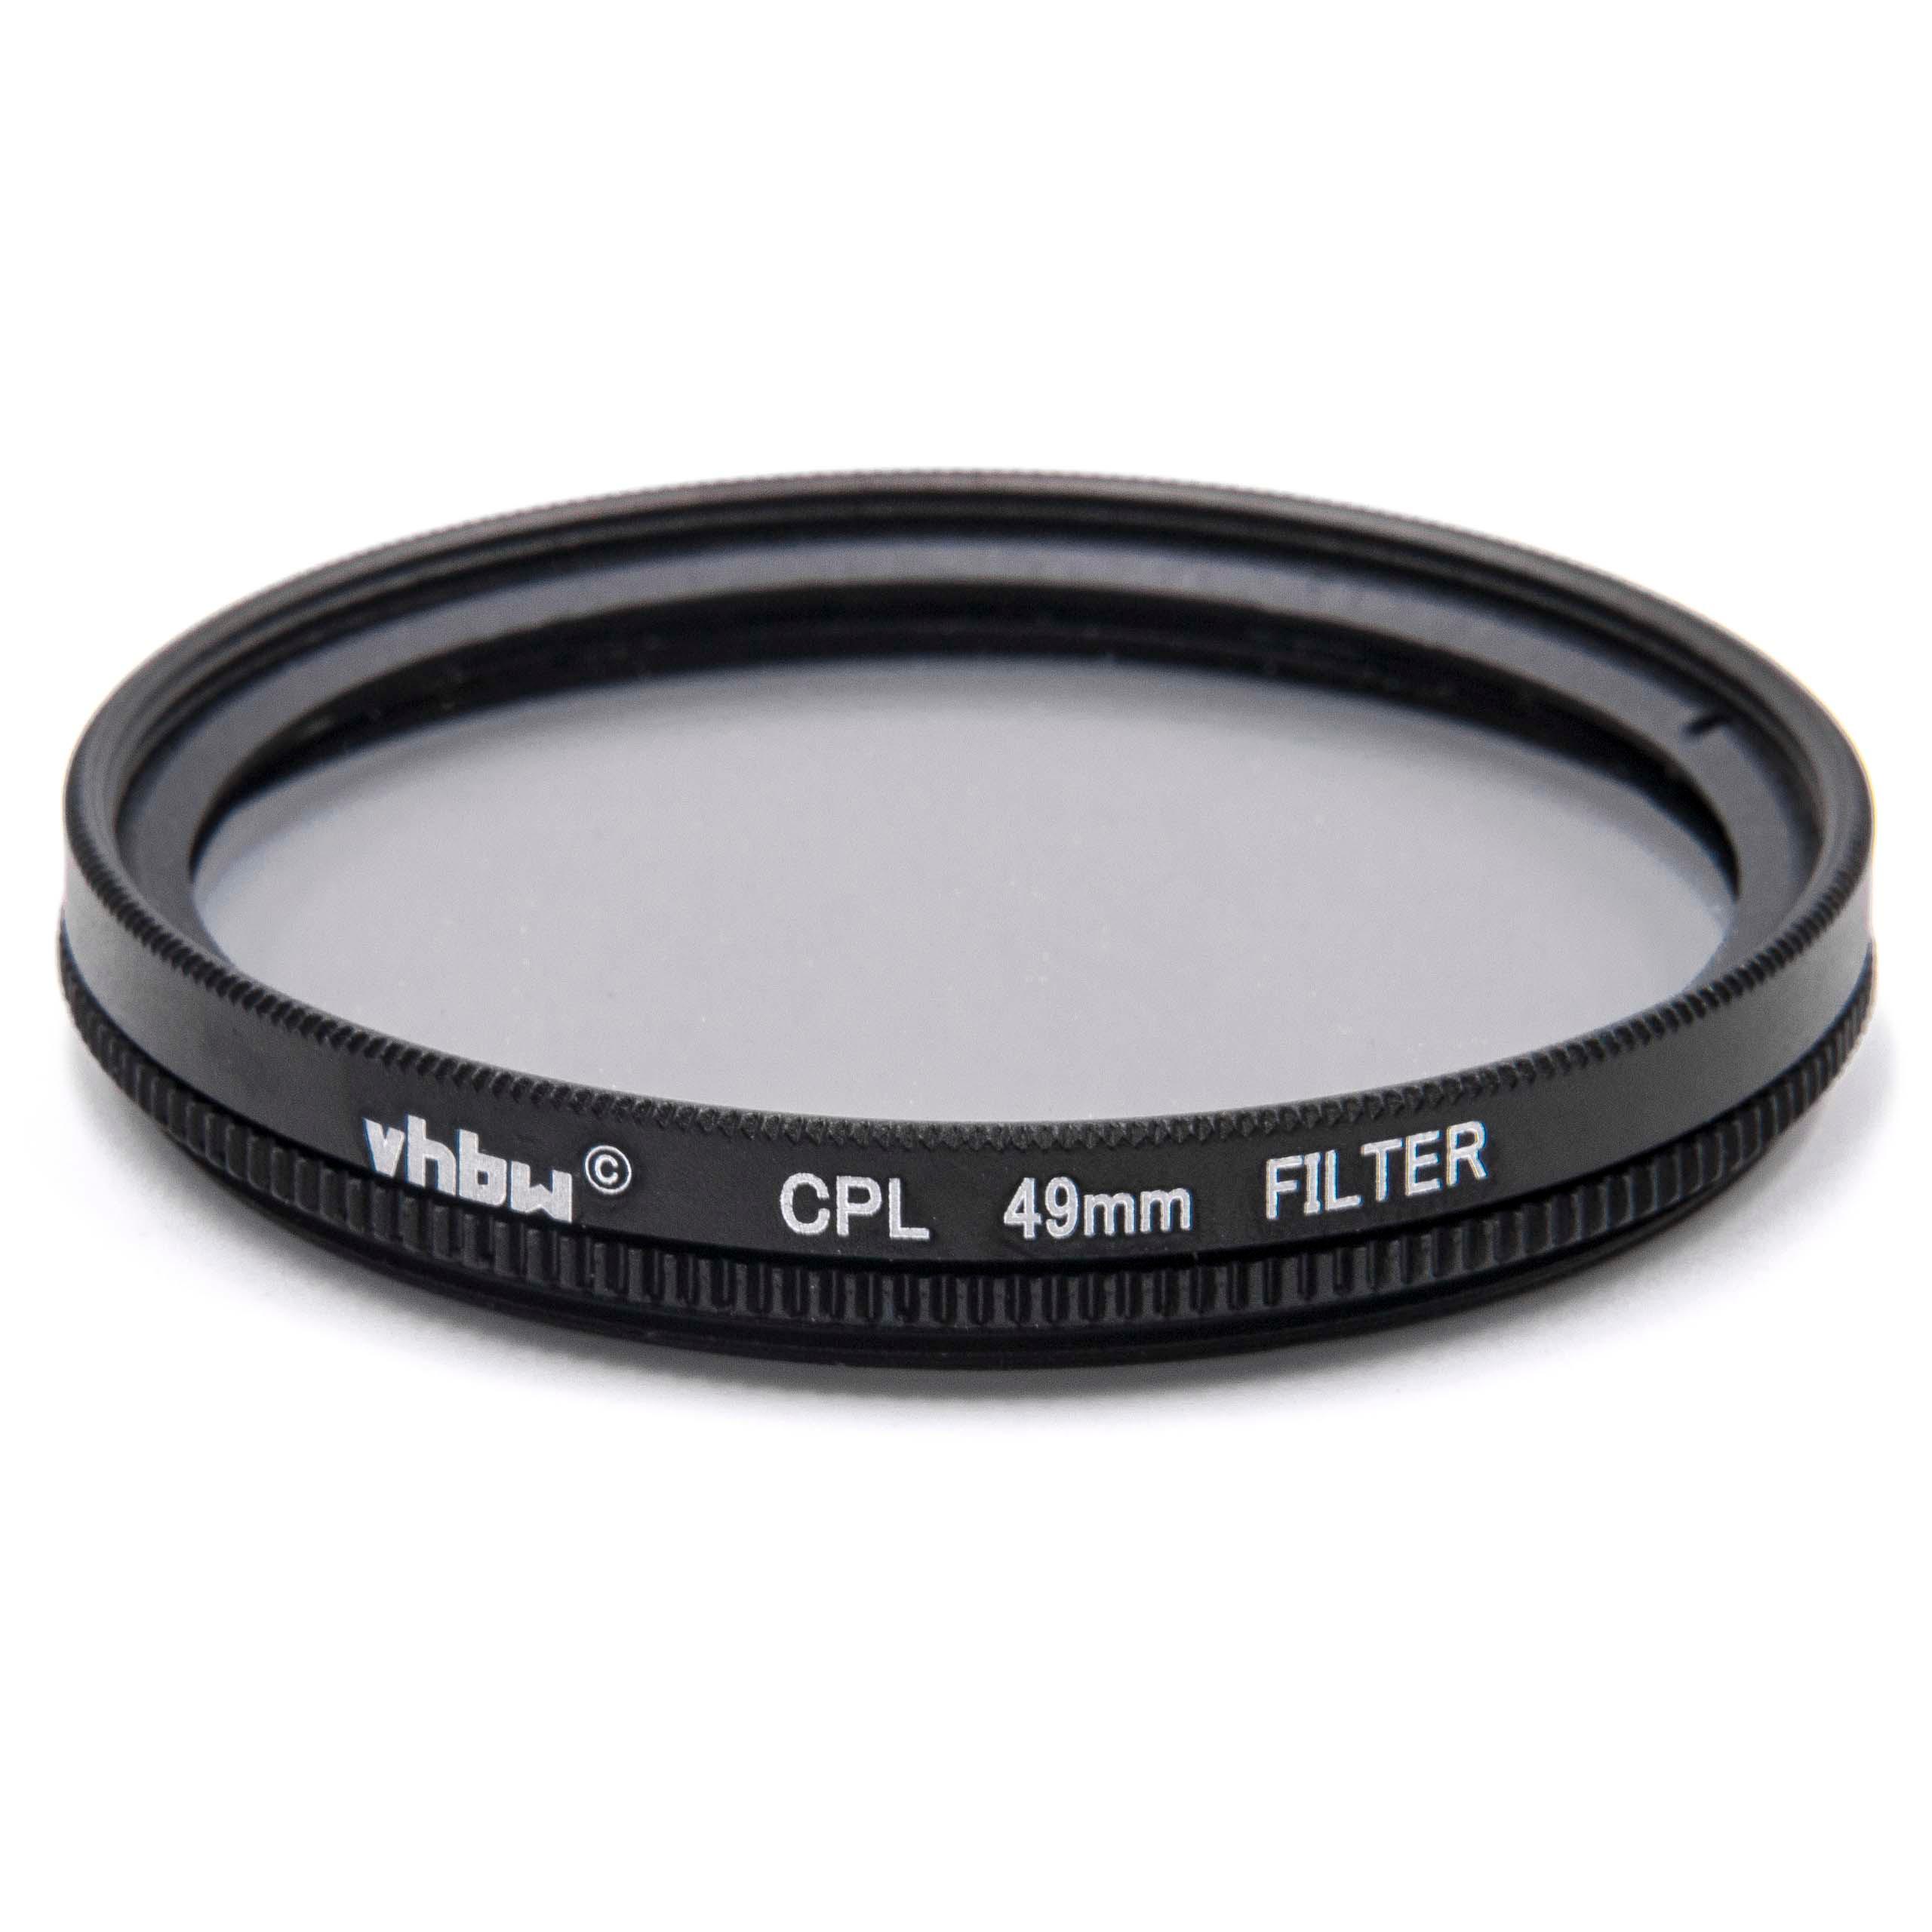 Filtr polaryzacyjny 49mm do różnych obiektywów aparatów - filtr CPL 